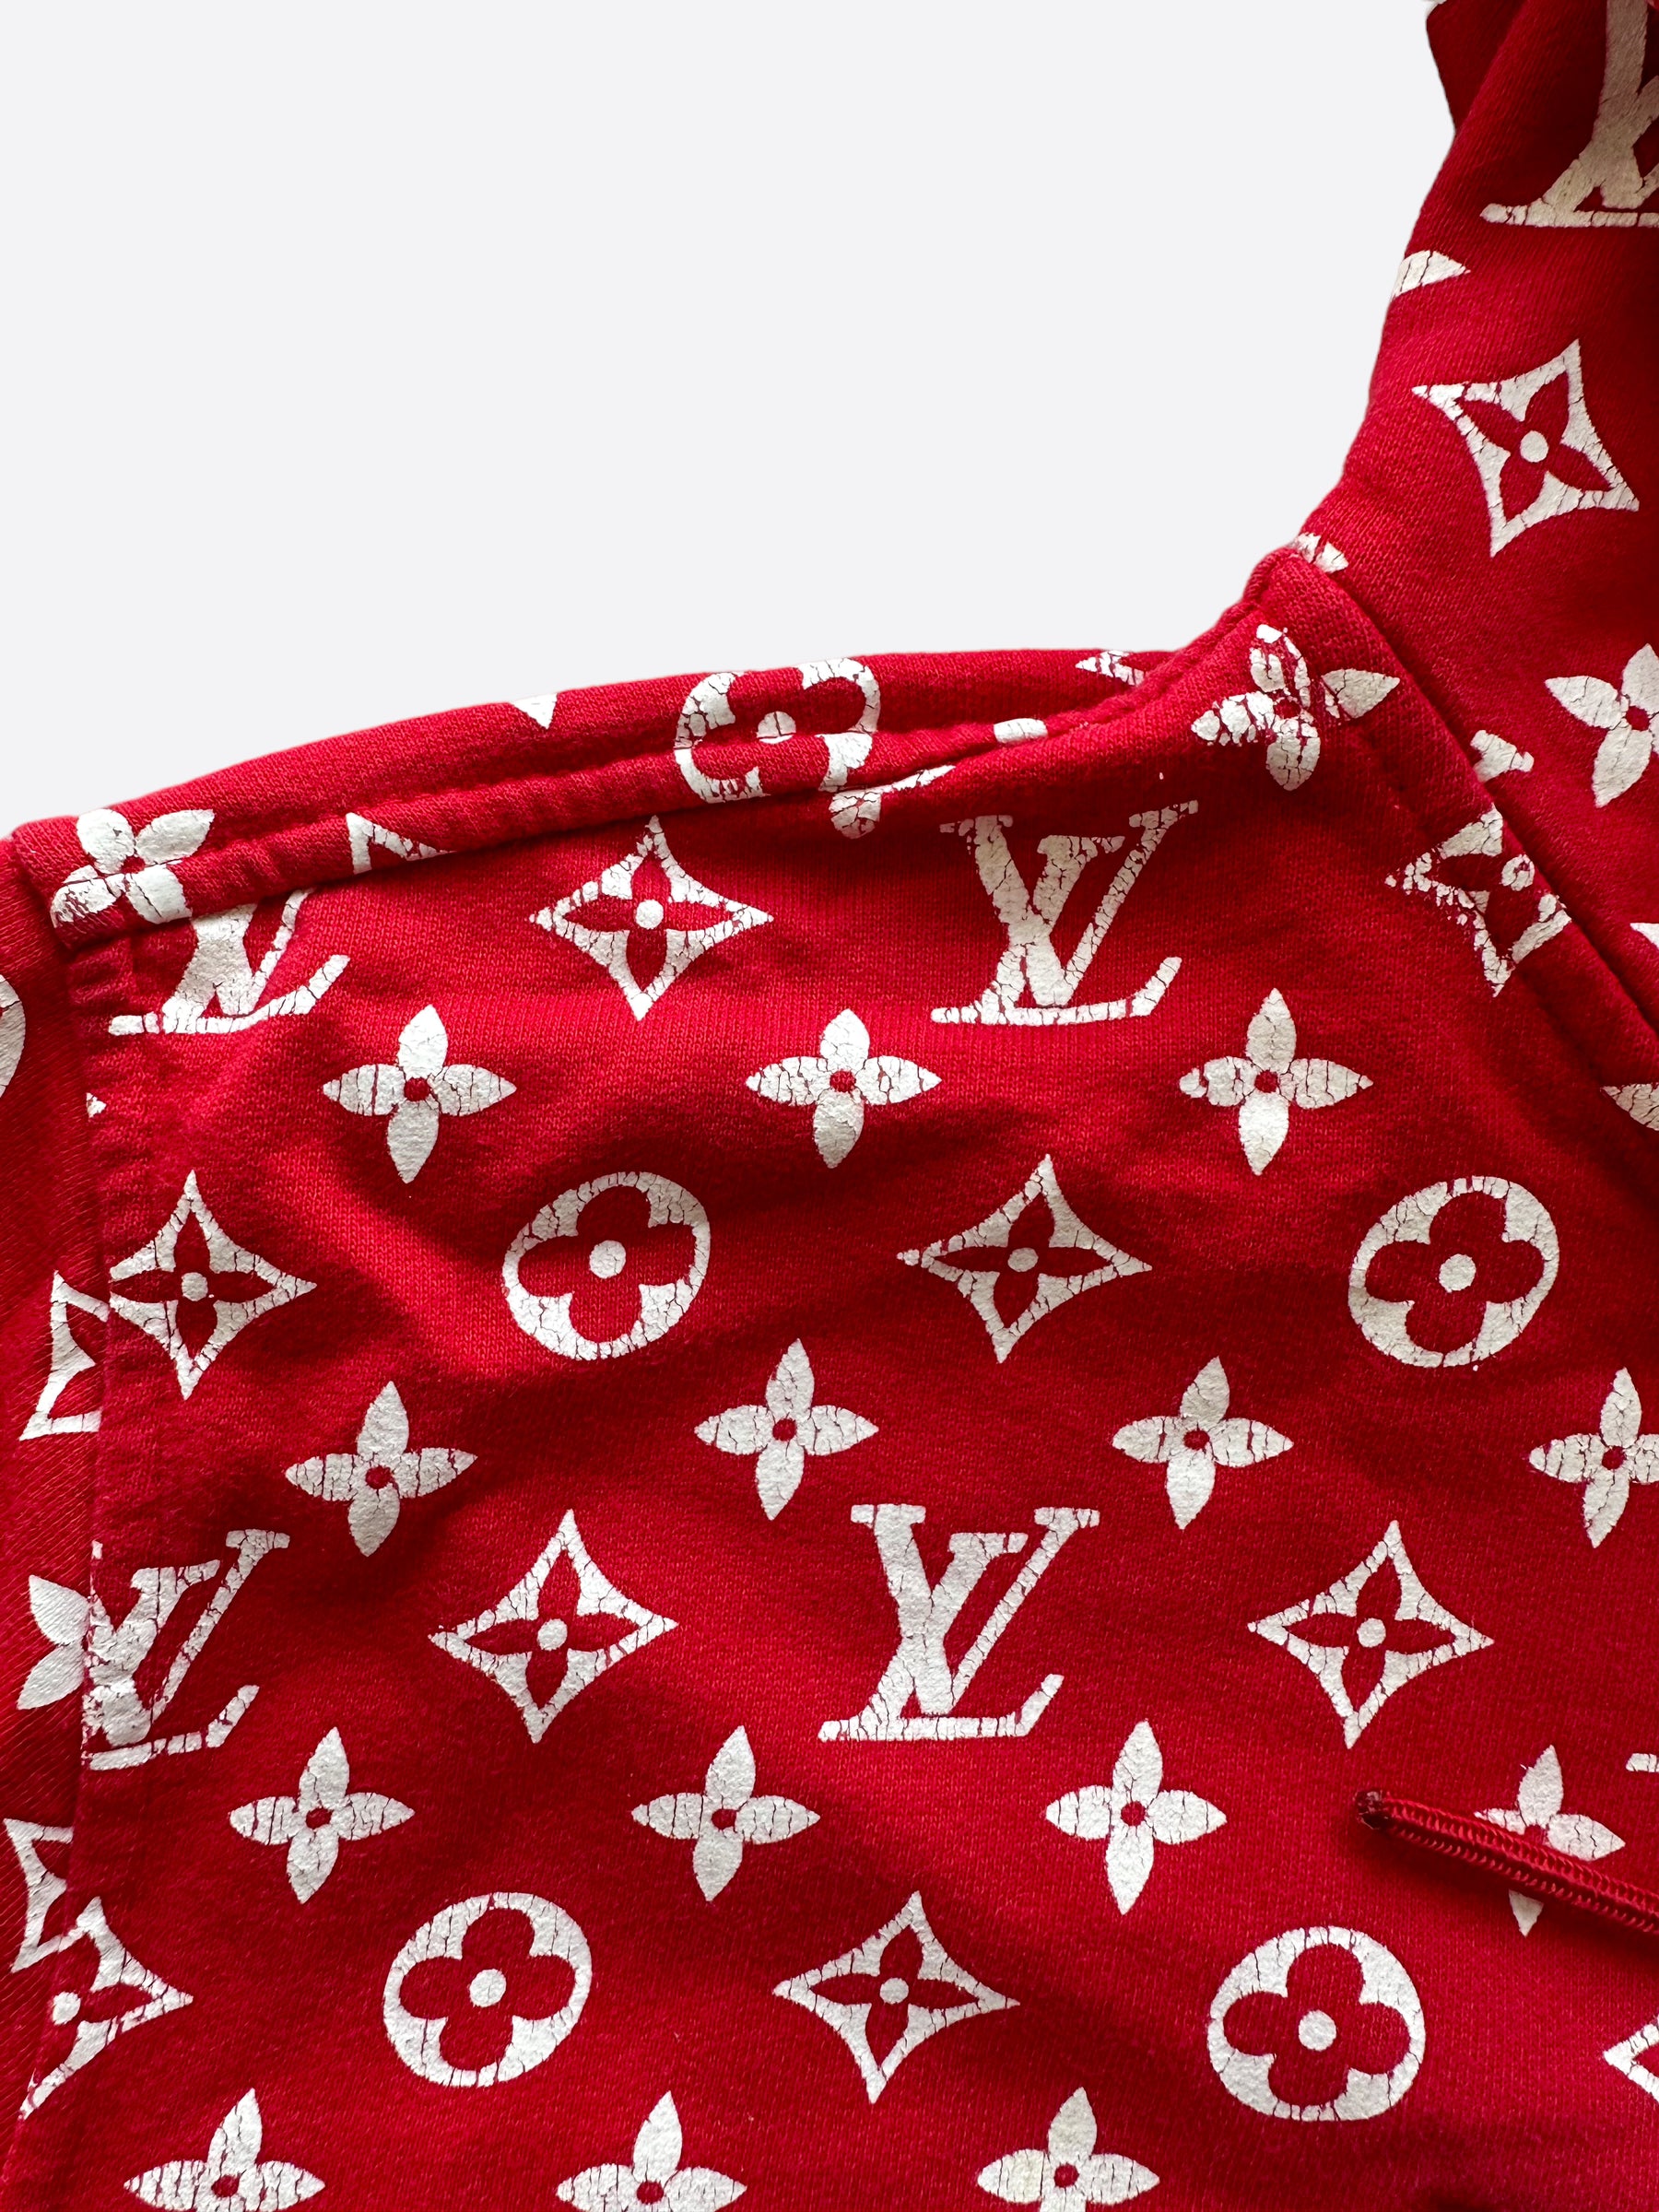 Knitwear & sweatshirt Louis Vuitton x Supreme Red size M